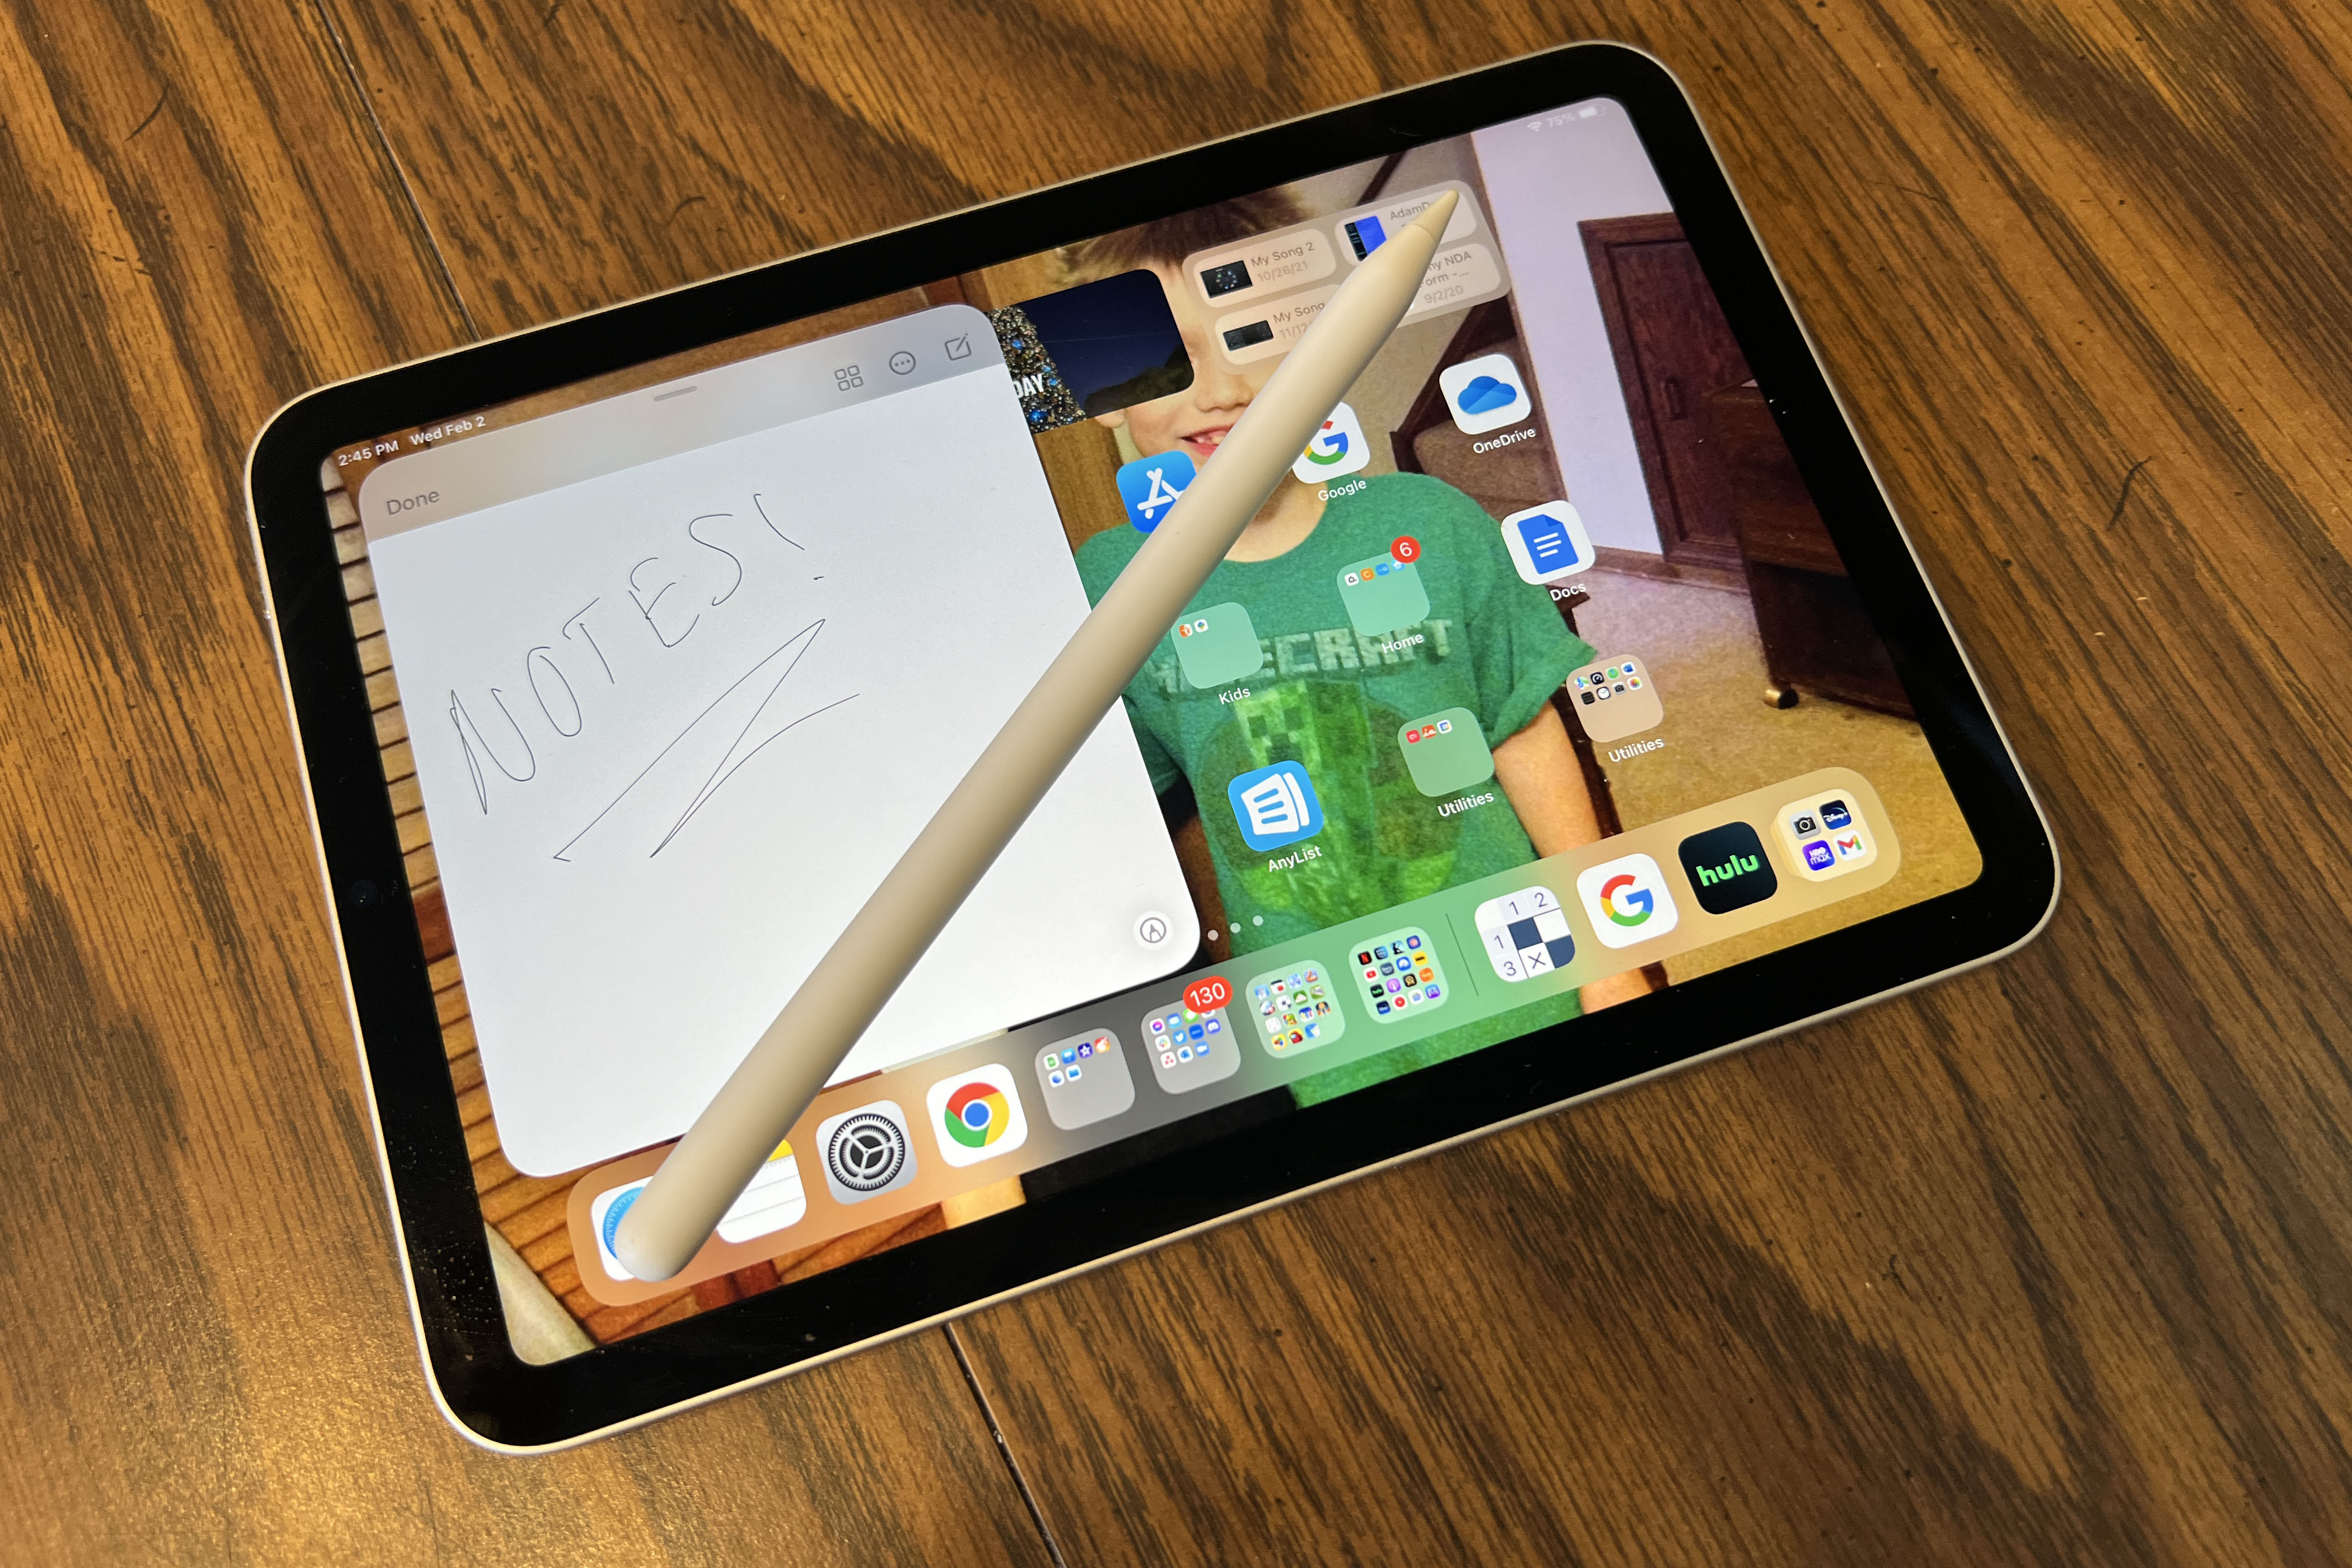 Apple introduces 8-inch iPad mini, updated full-size iPad - UK